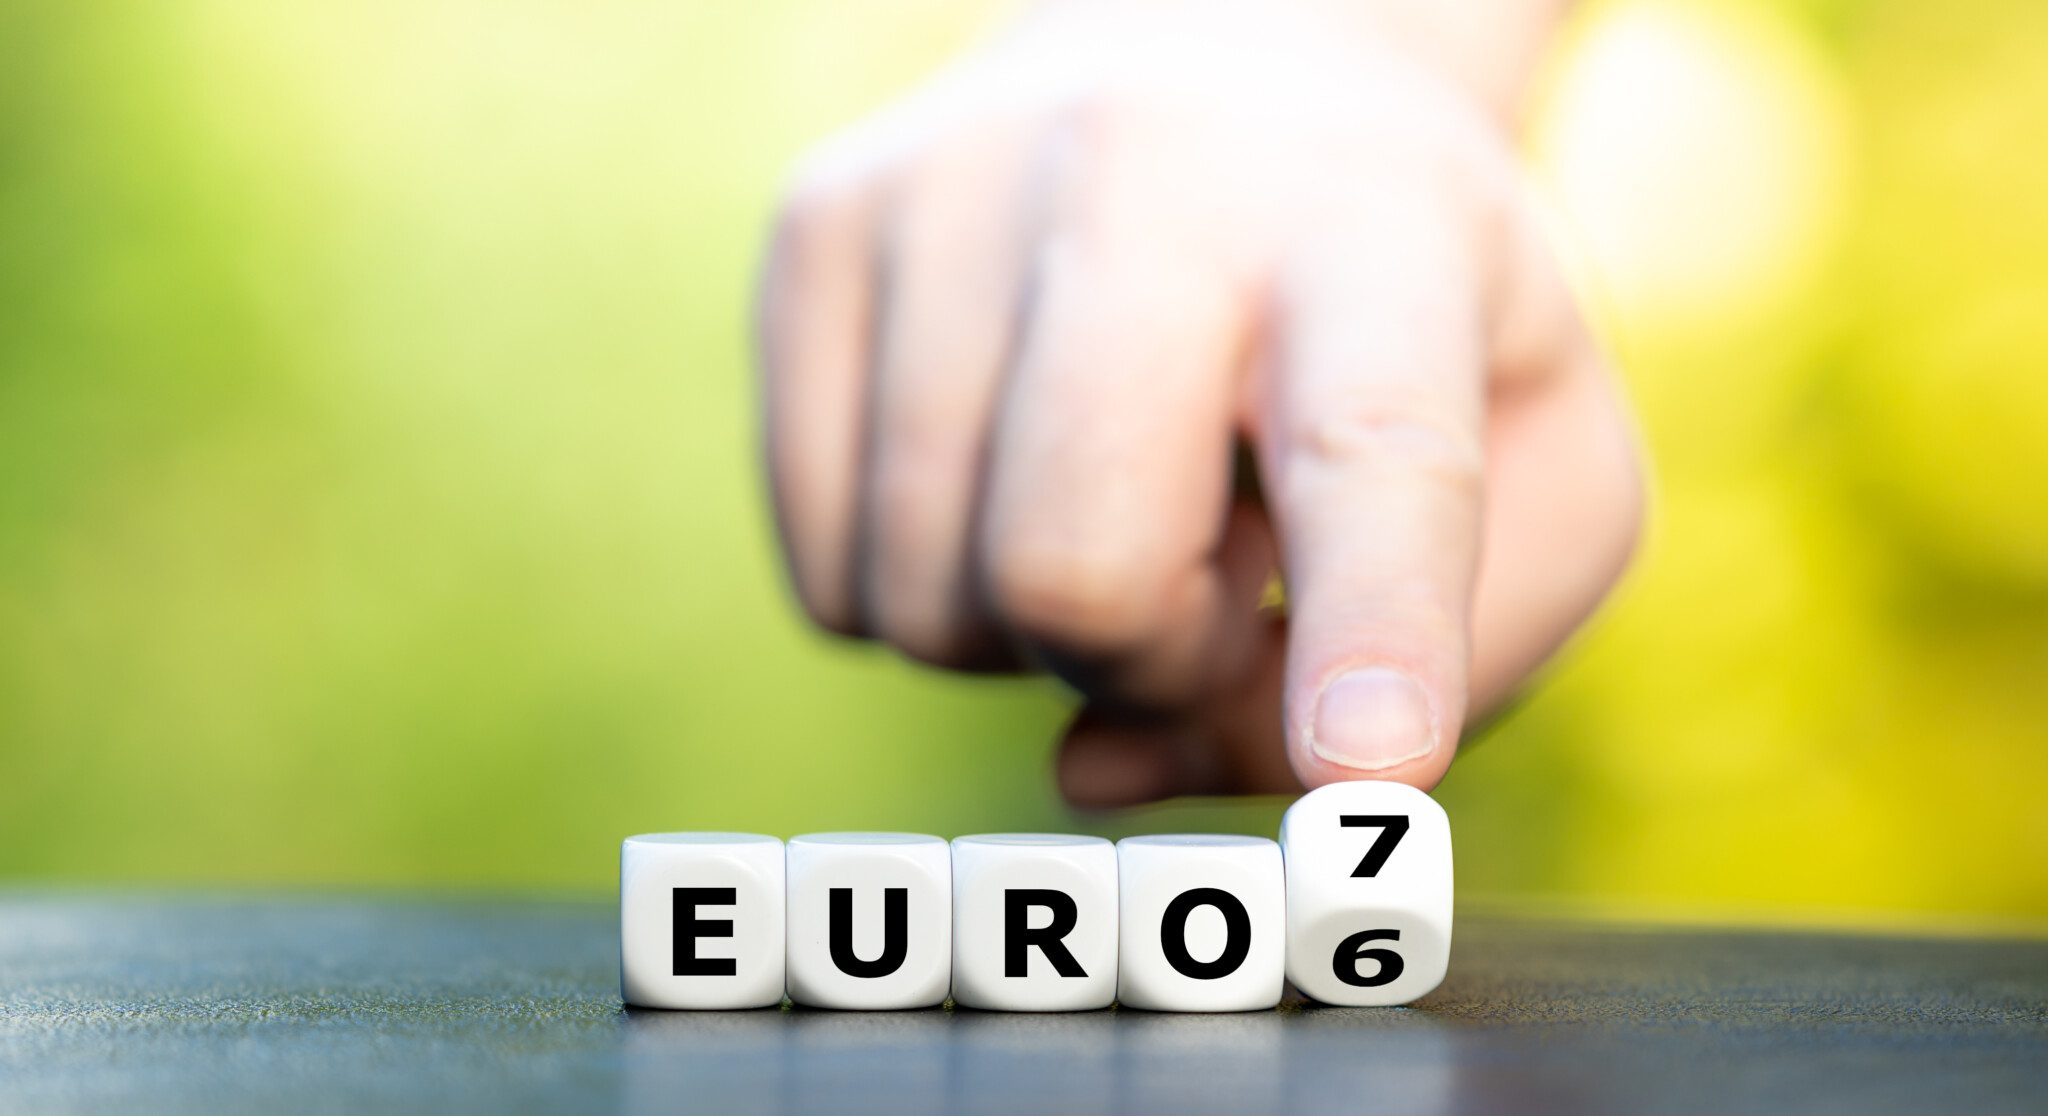 euro 6 y euro 7 normativa